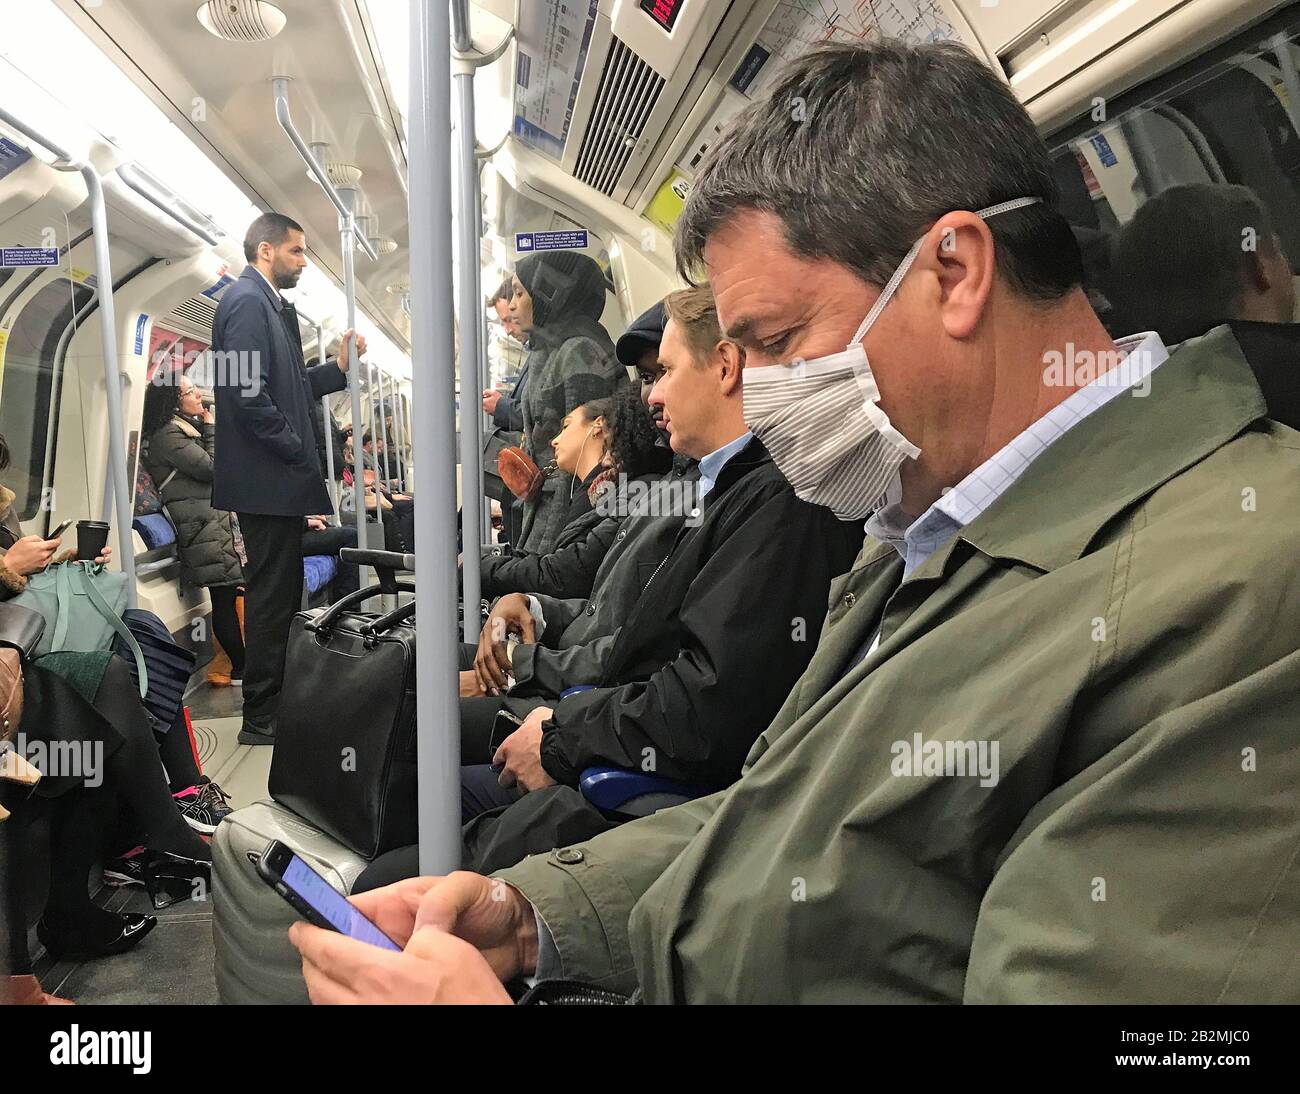 Ein Mann auf der Jubilee Line des Londoner U-Bahn-Netzes, der am Tag einen schützenden Gesichtsschutz trägt, sagte Heath Secretary Matt Hancock, dass die Zahl der Menschen, bei denen Coronavirus diagnostiziert wurde, in Großbritannien auf 51 gestiegen sei. Stockfoto